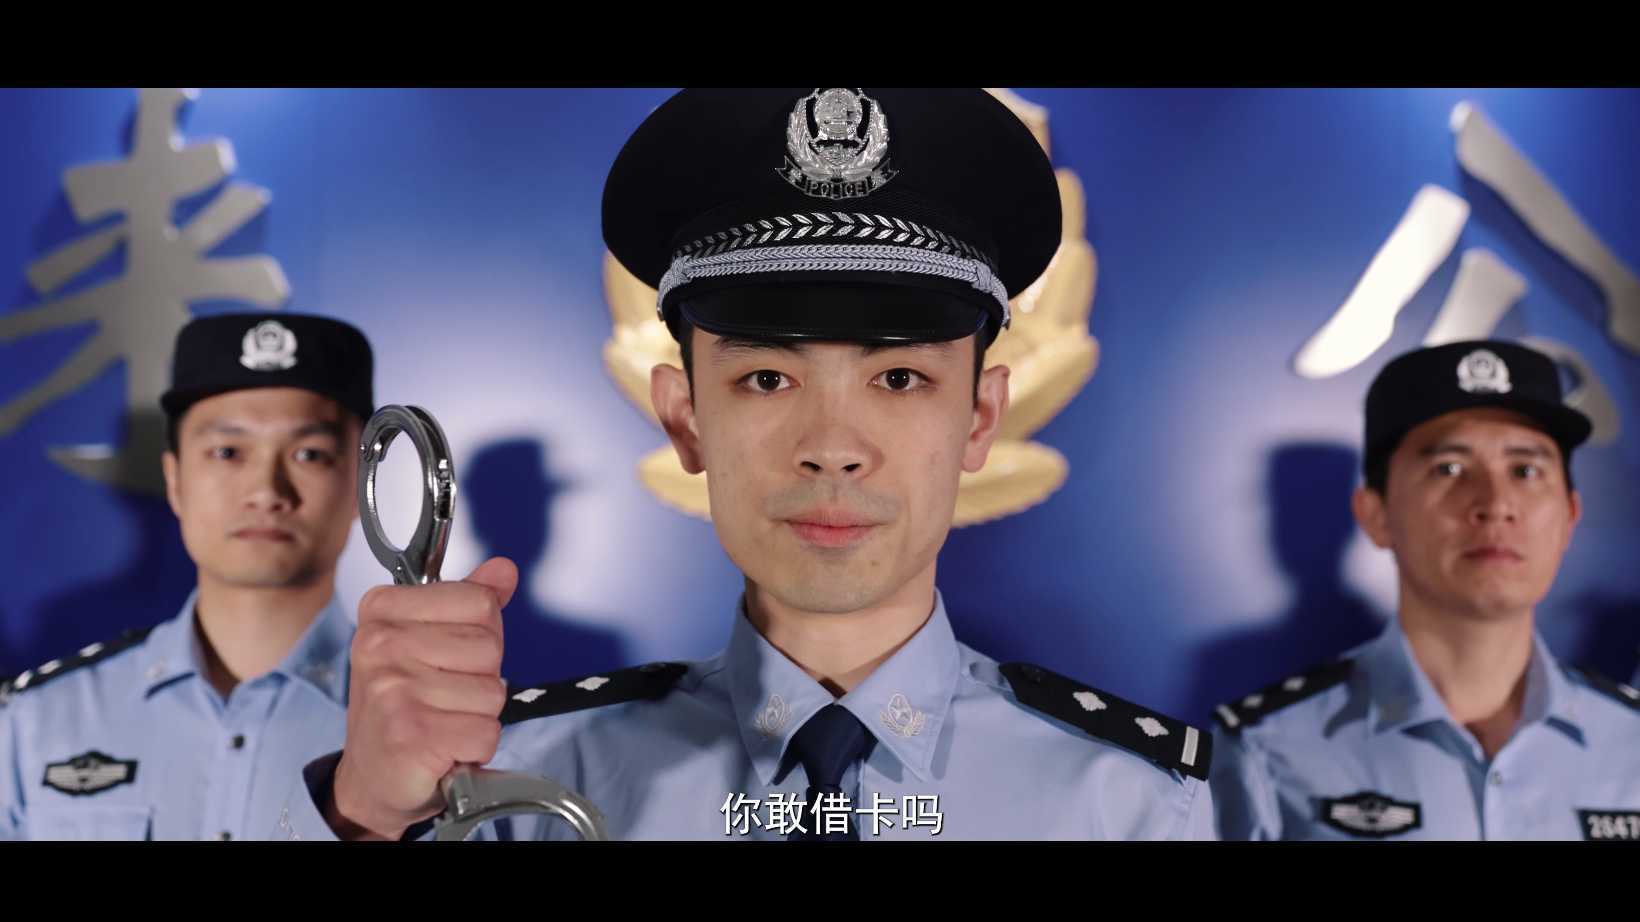 惠来公安局反诈骗微电影《破卡》